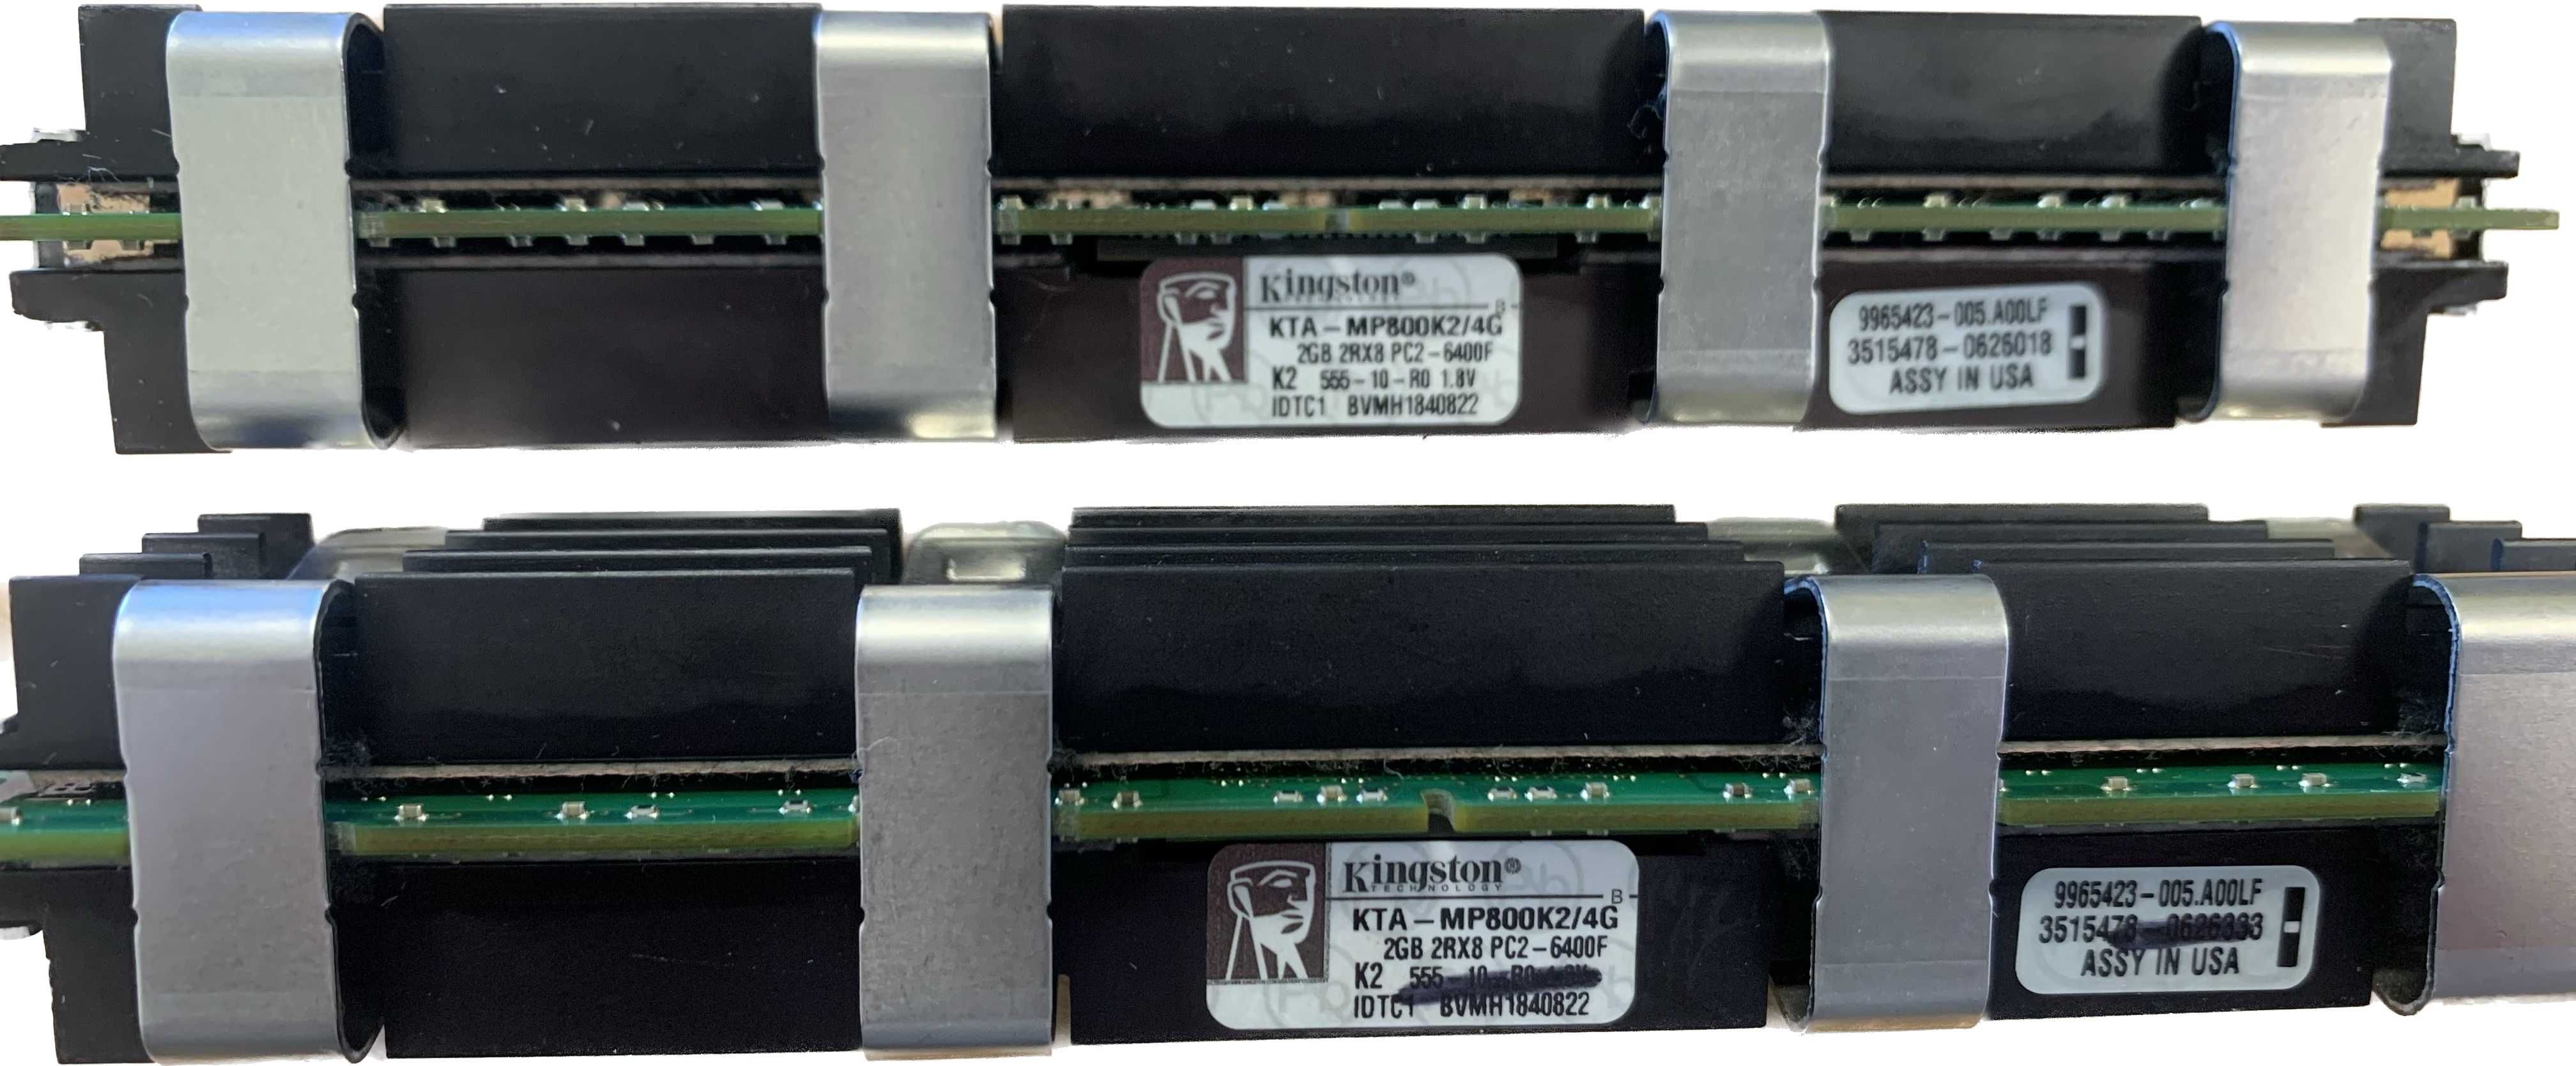 FB-DIMM Kingston KTA-MP800K2/4G (2*2GB)